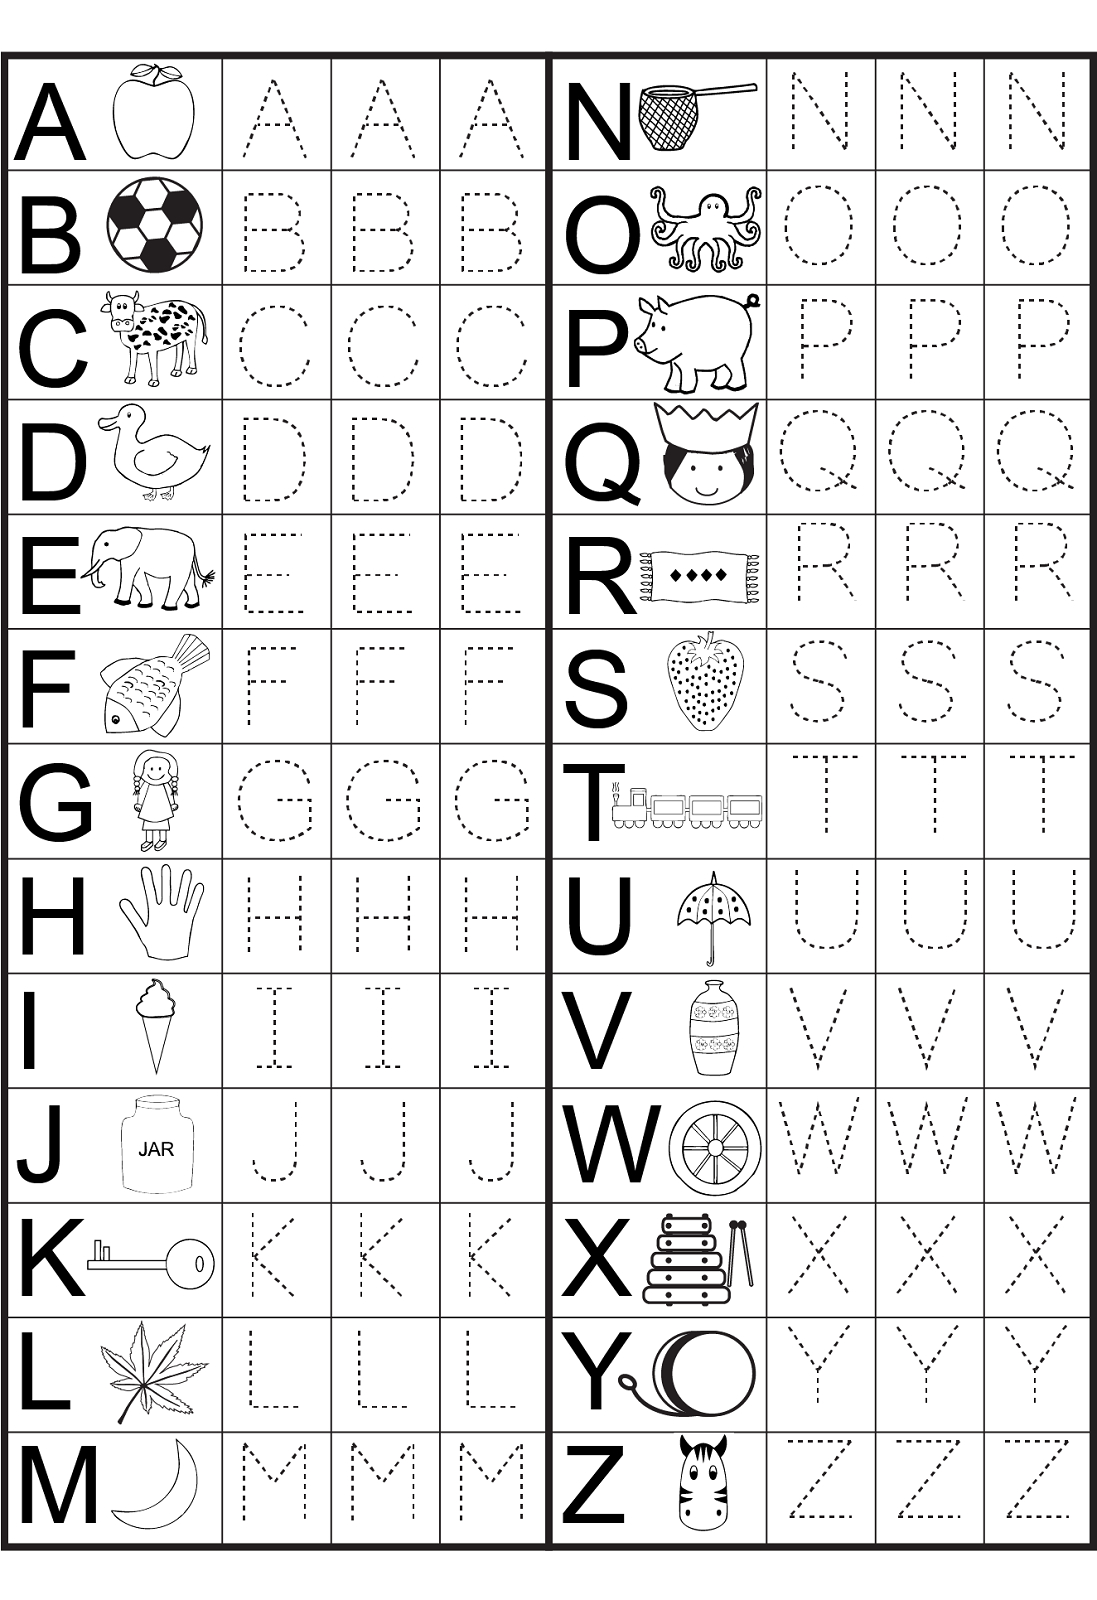 Fun Free Printable Worksheets - Safer Browser Yahoo India Image - Free Printable Alphabet Worksheets For Kindergarten